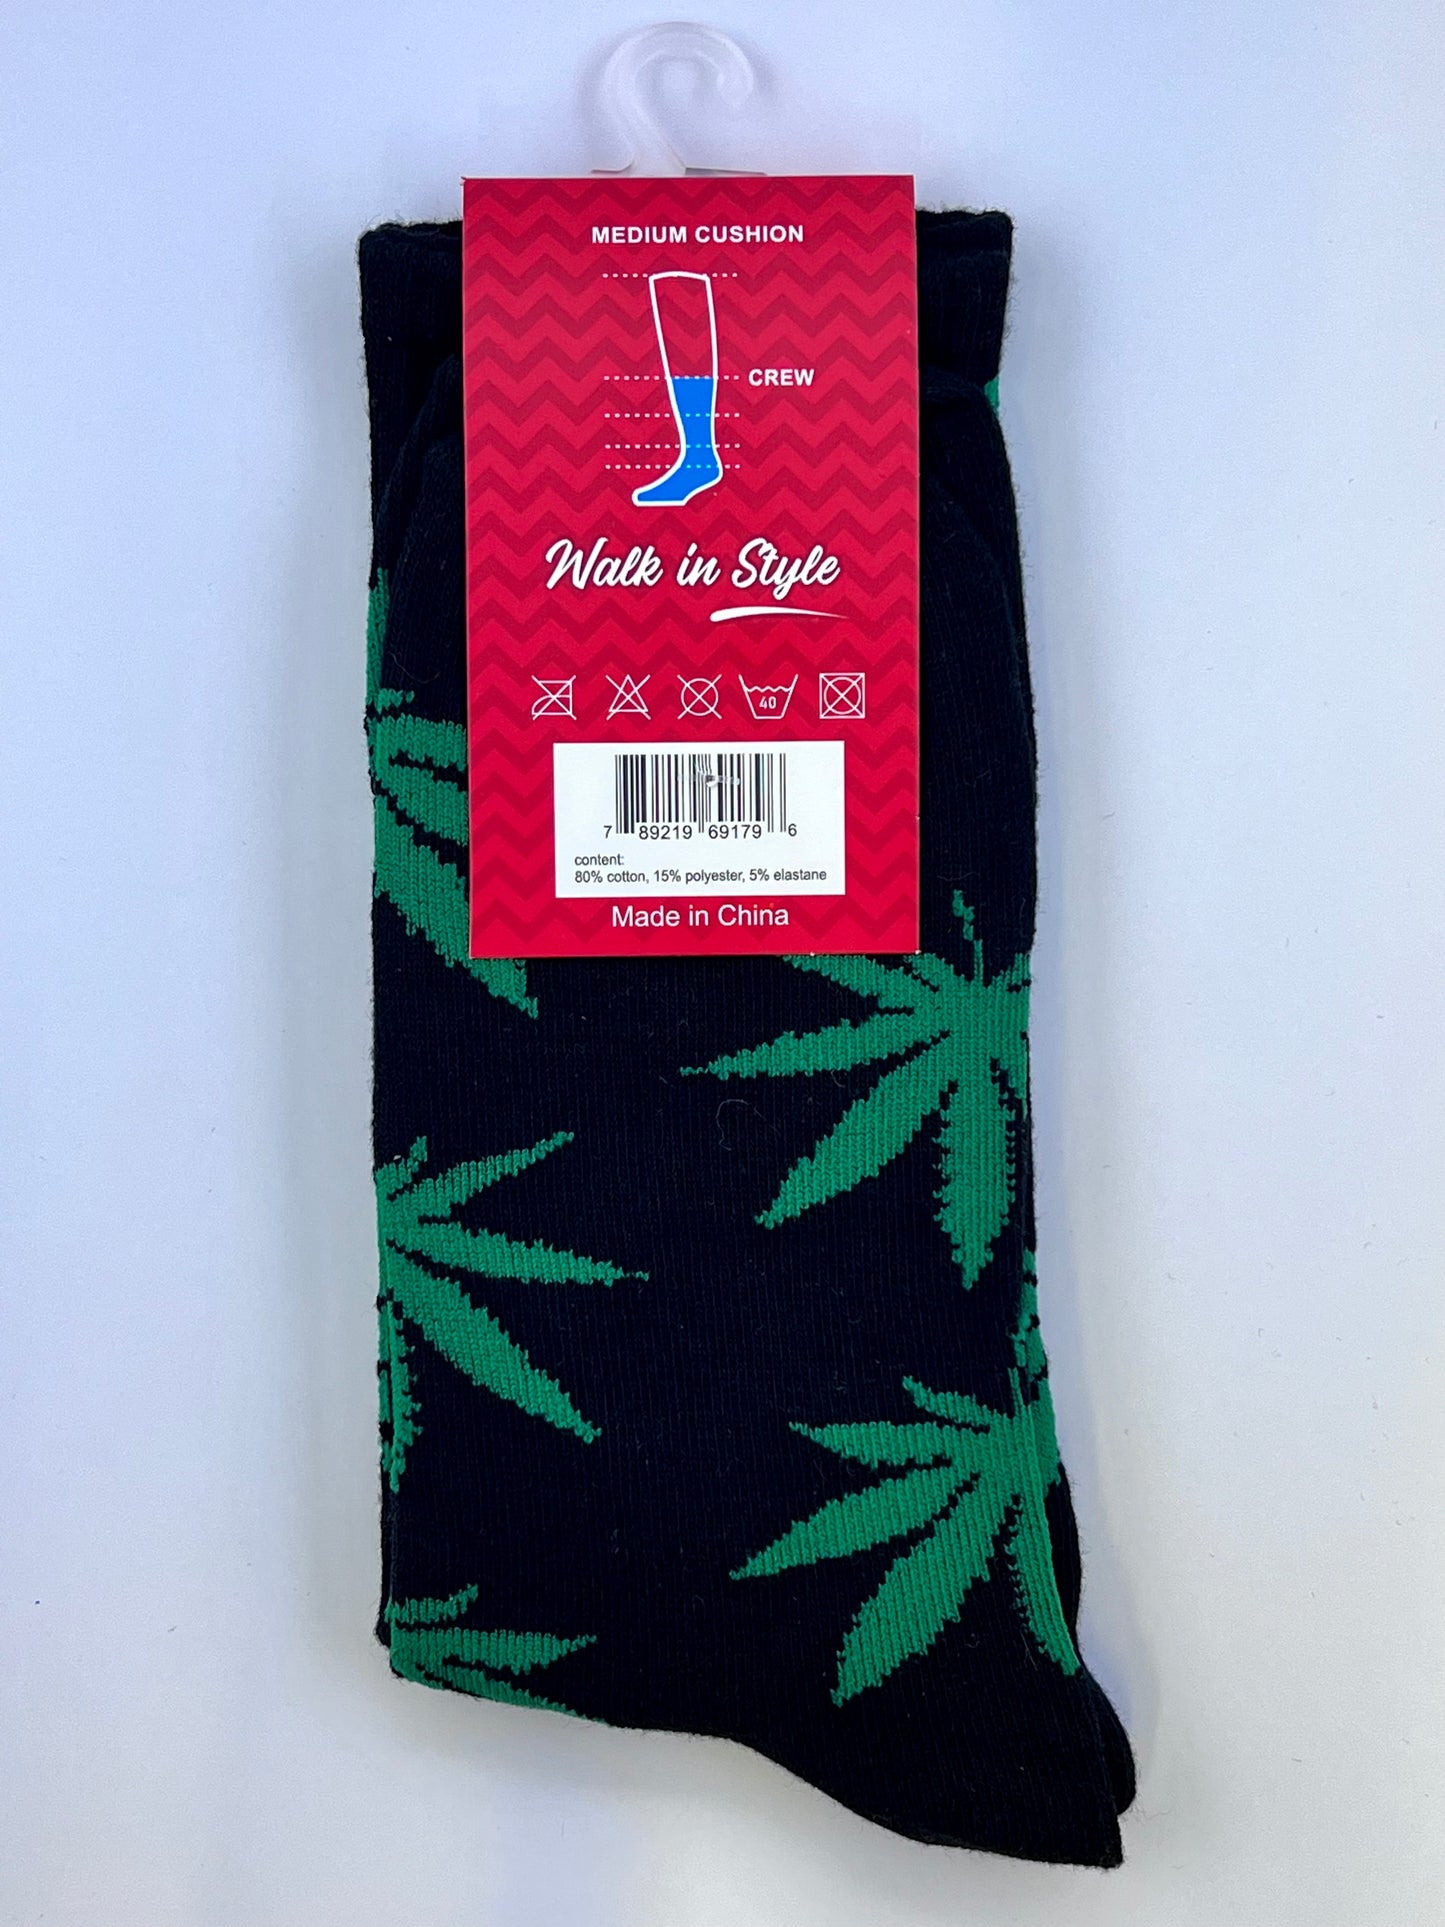 Leaf Patterned Socks for Men and Women - Black